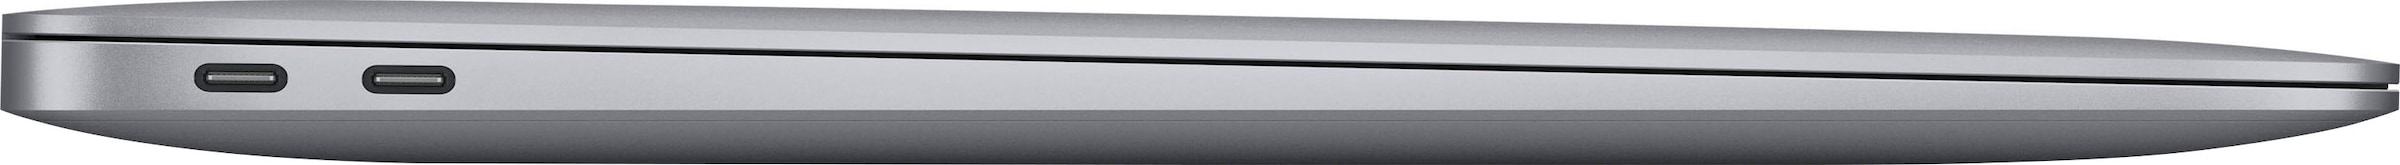 256 13,3 M1, »MacBook kaufen 33,78 cm, Apple Notebook SSD, Apple, GB / Zoll, 8-core CPU Air«, M1, Rechnung auf